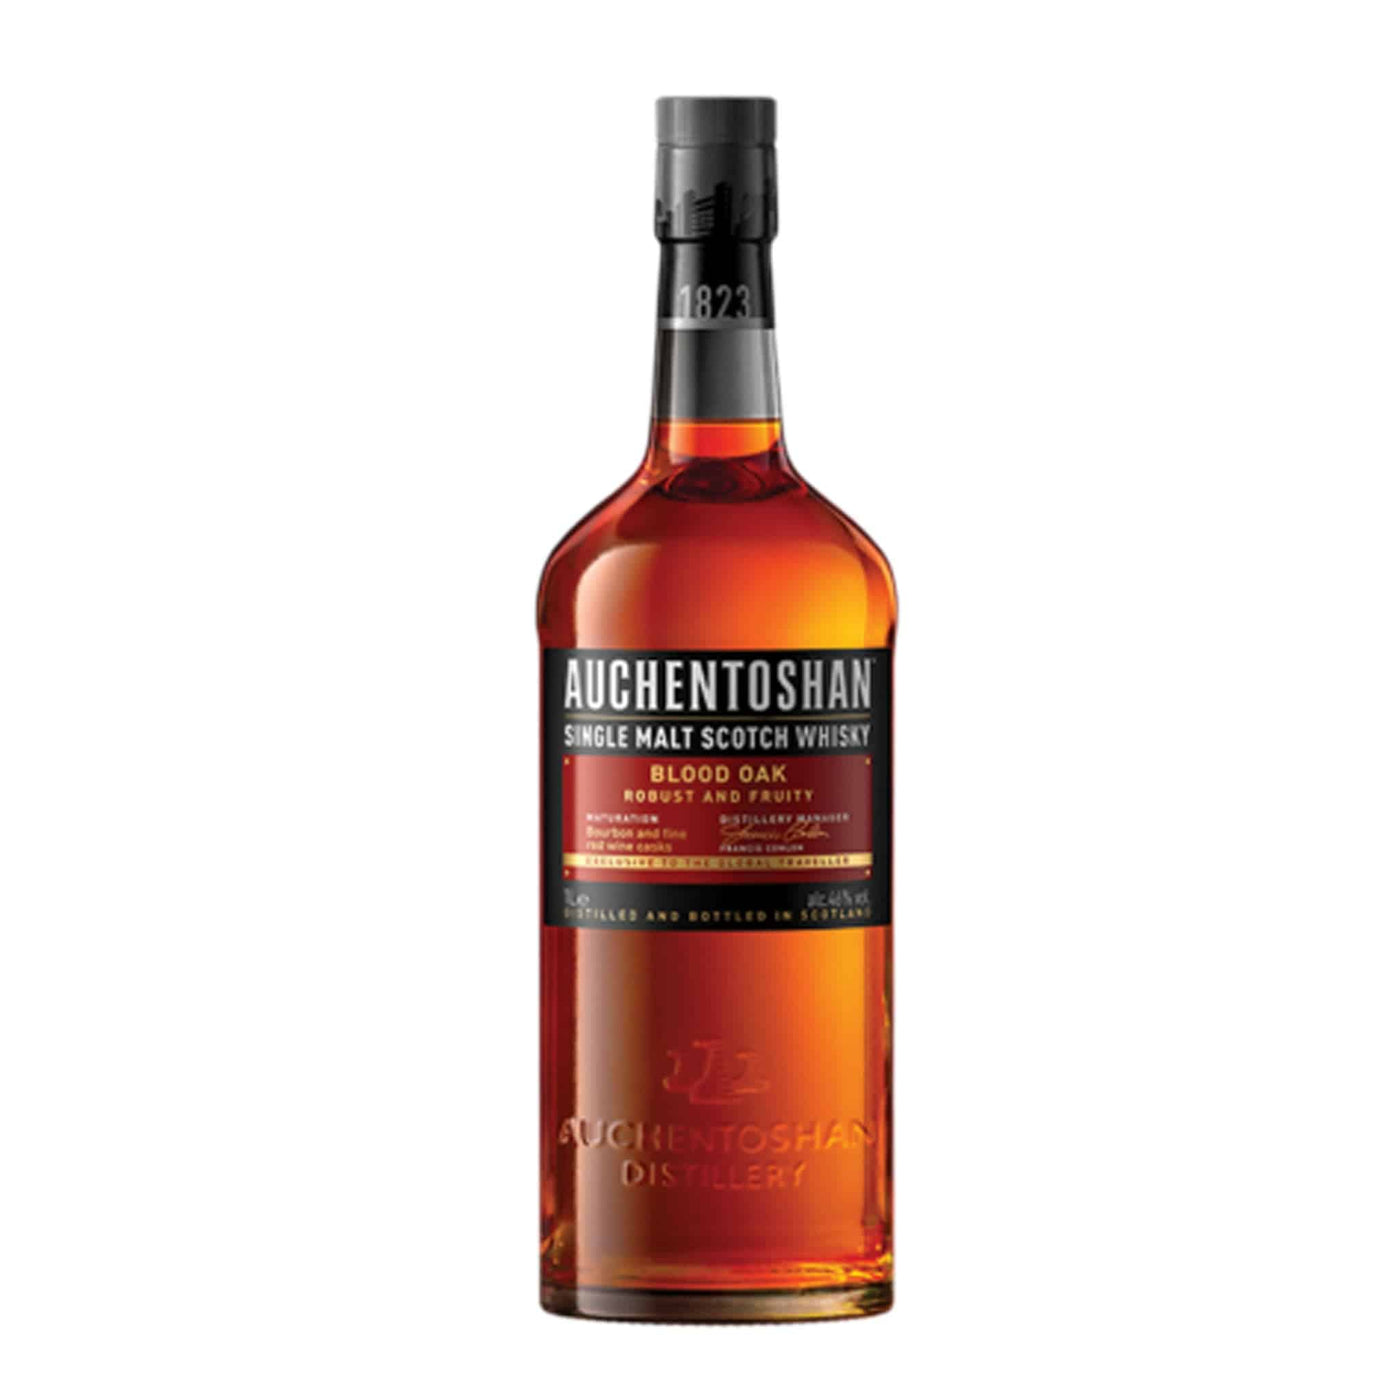 Auchentoshan Blood Oak Whisky - Spiritly